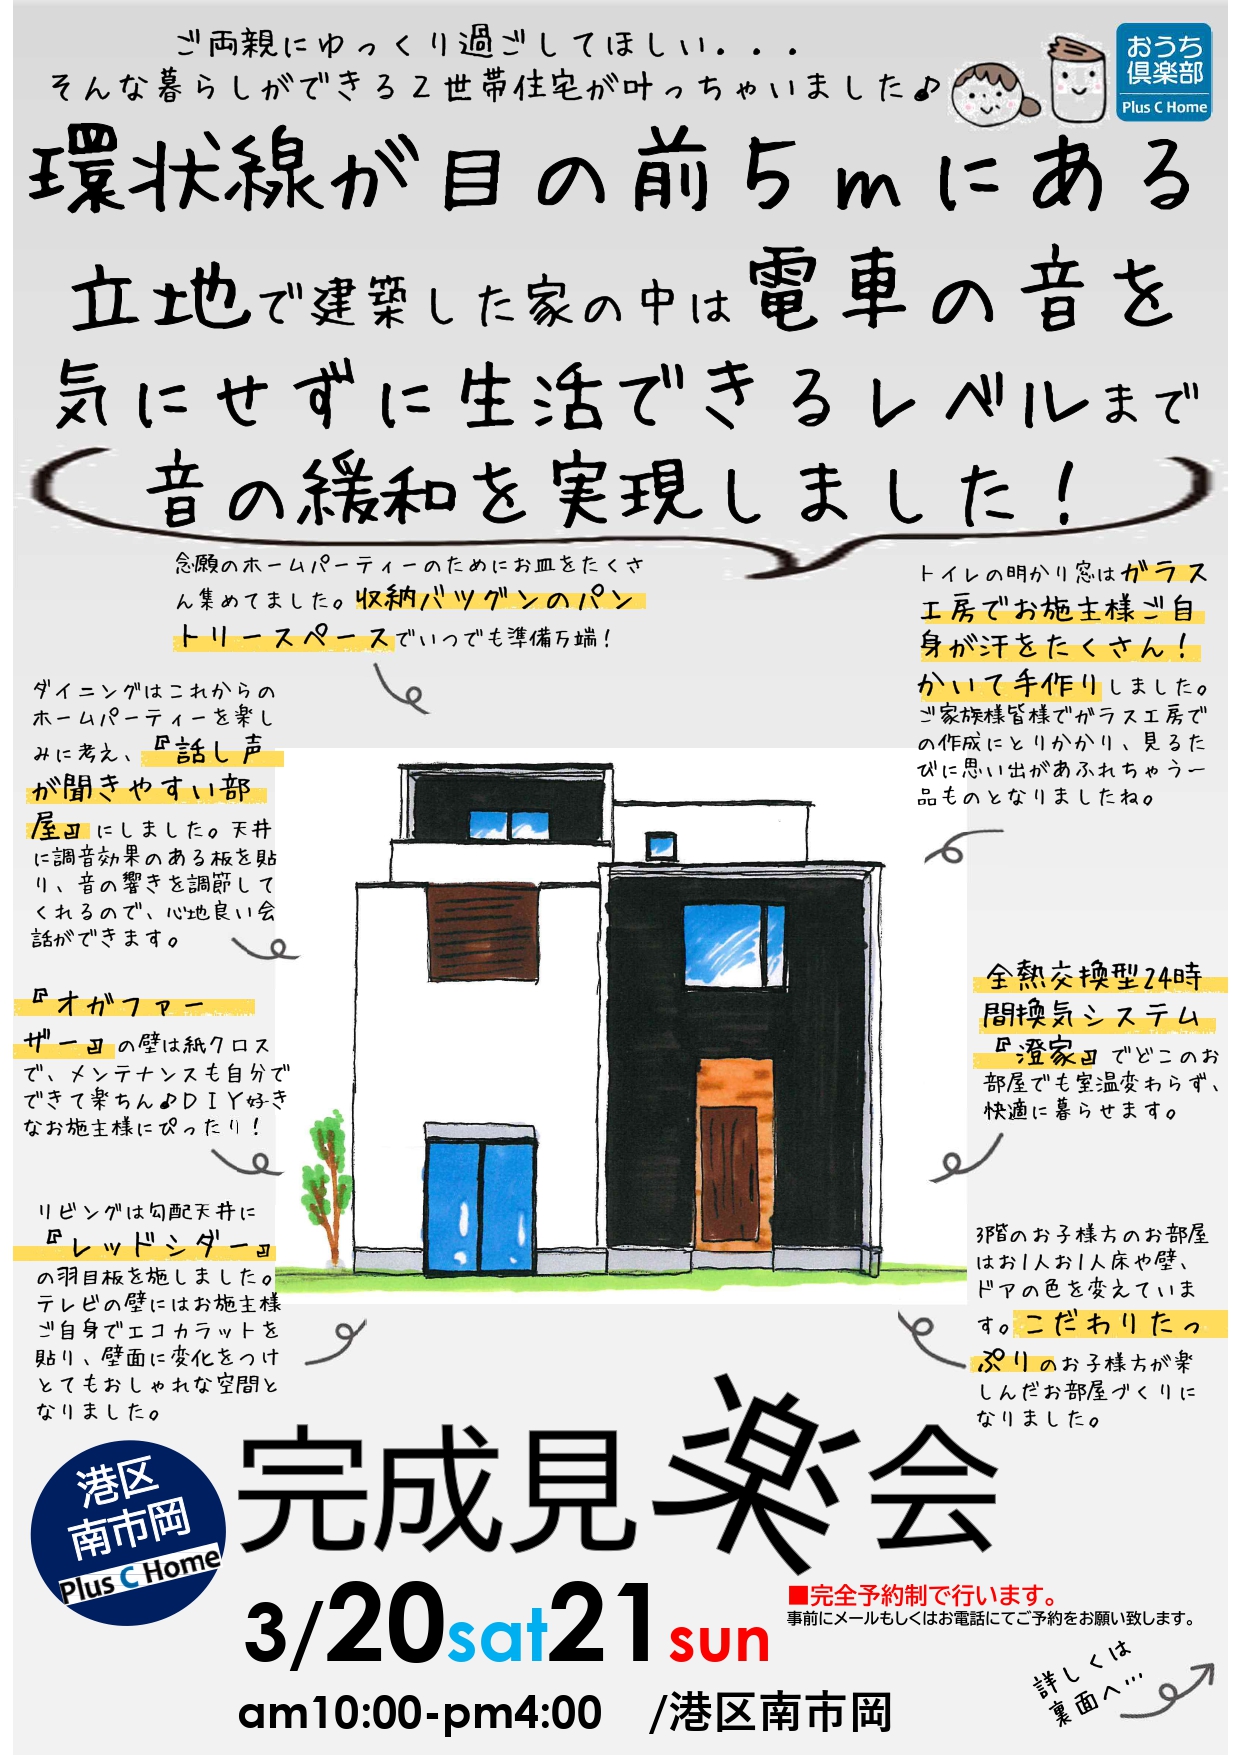 大阪市鶴見区で高断熱・高気密住宅を建てております工務店Plus C Homeが港区南市岡で完成見楽会を開催します♪